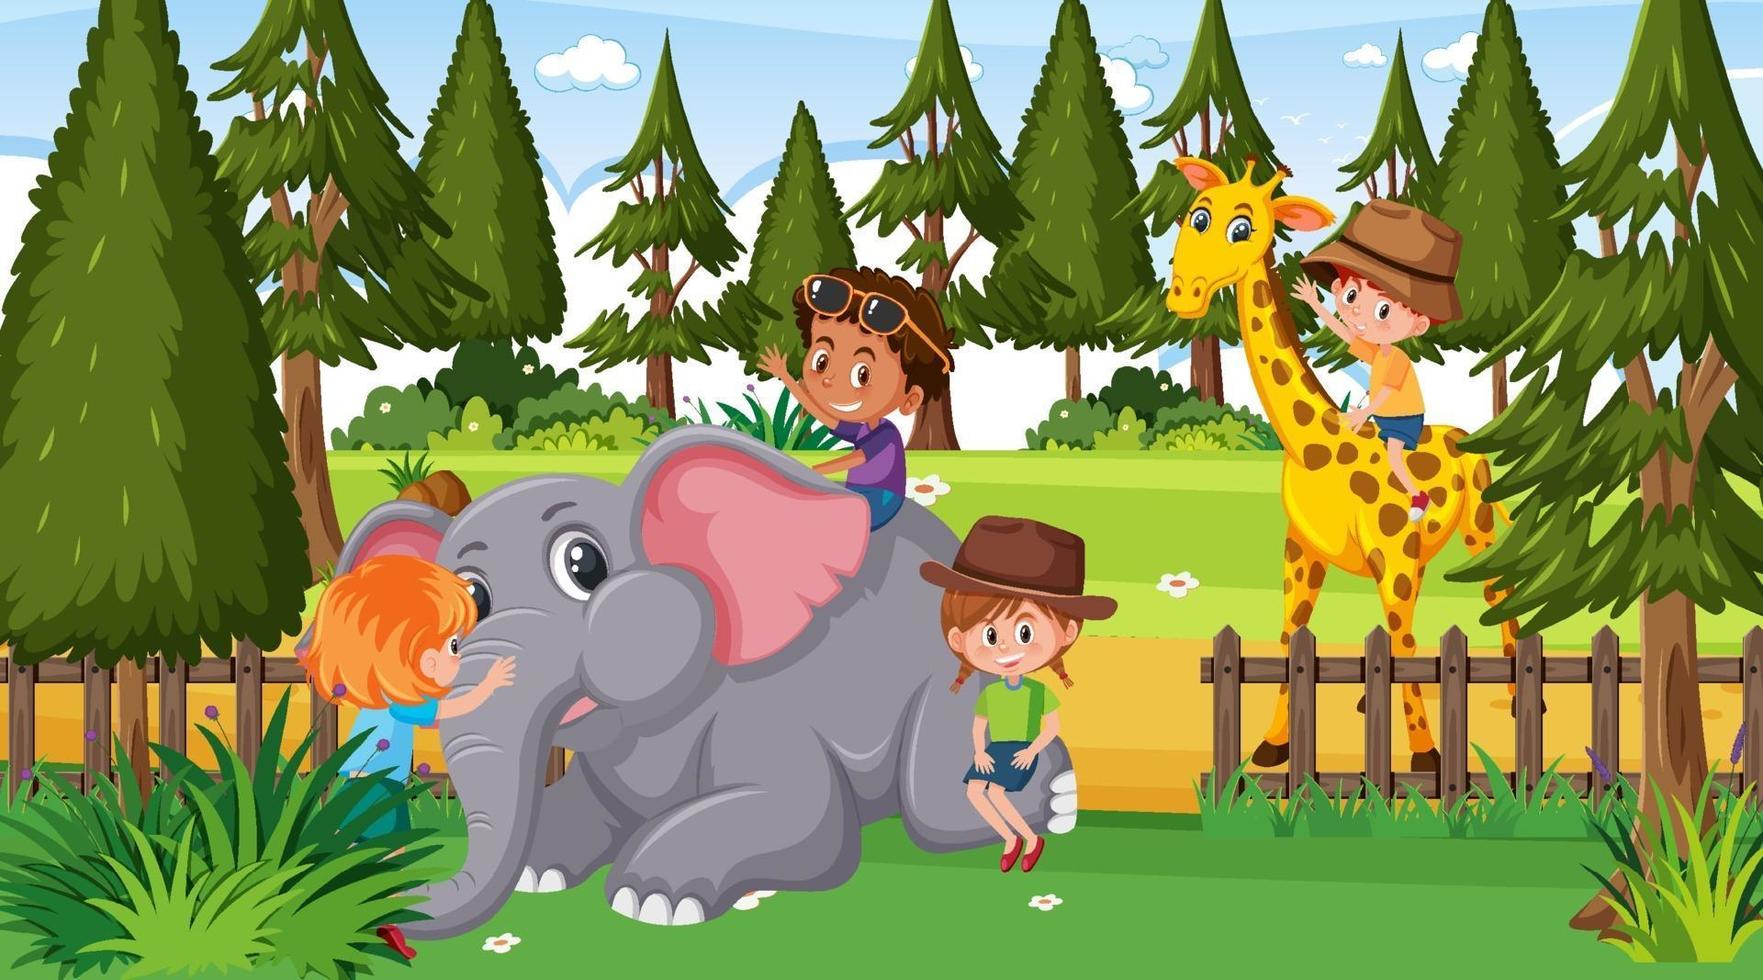 cena do zoológico com muitas crianças brincando com animais do zoológico vetor